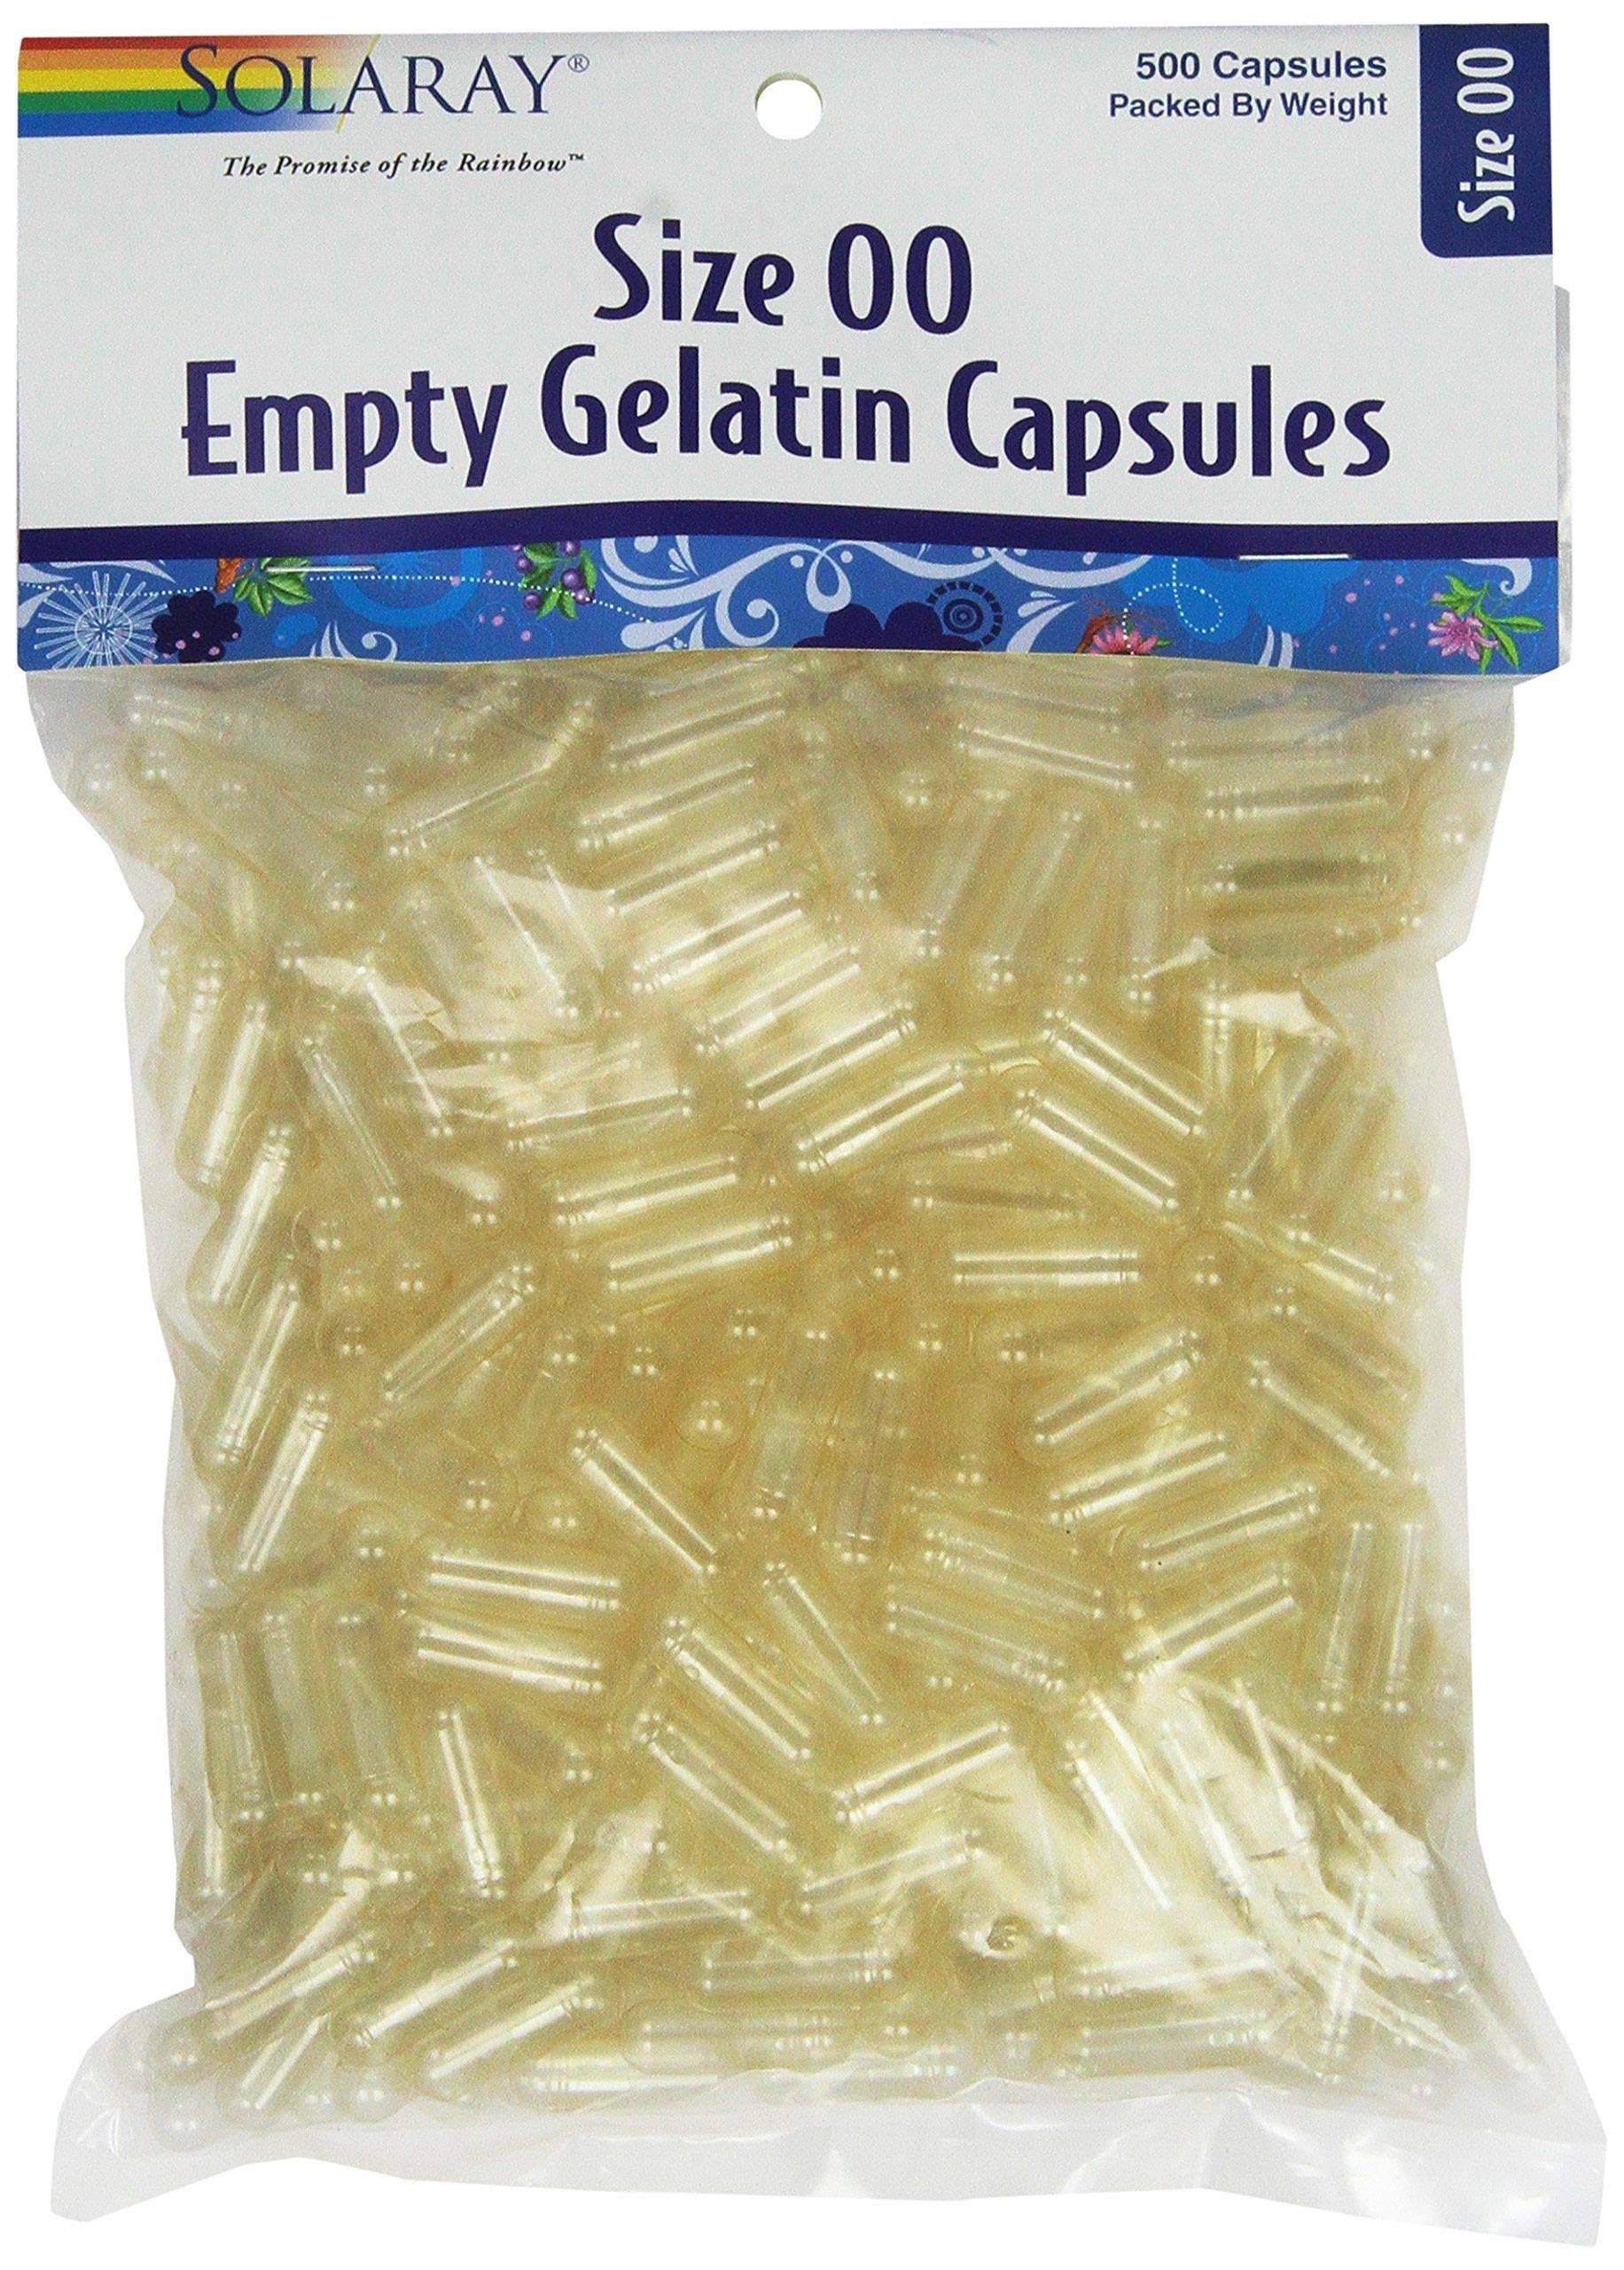 Solaray Empty Gelatin Capsules - Size 00, 500 Count